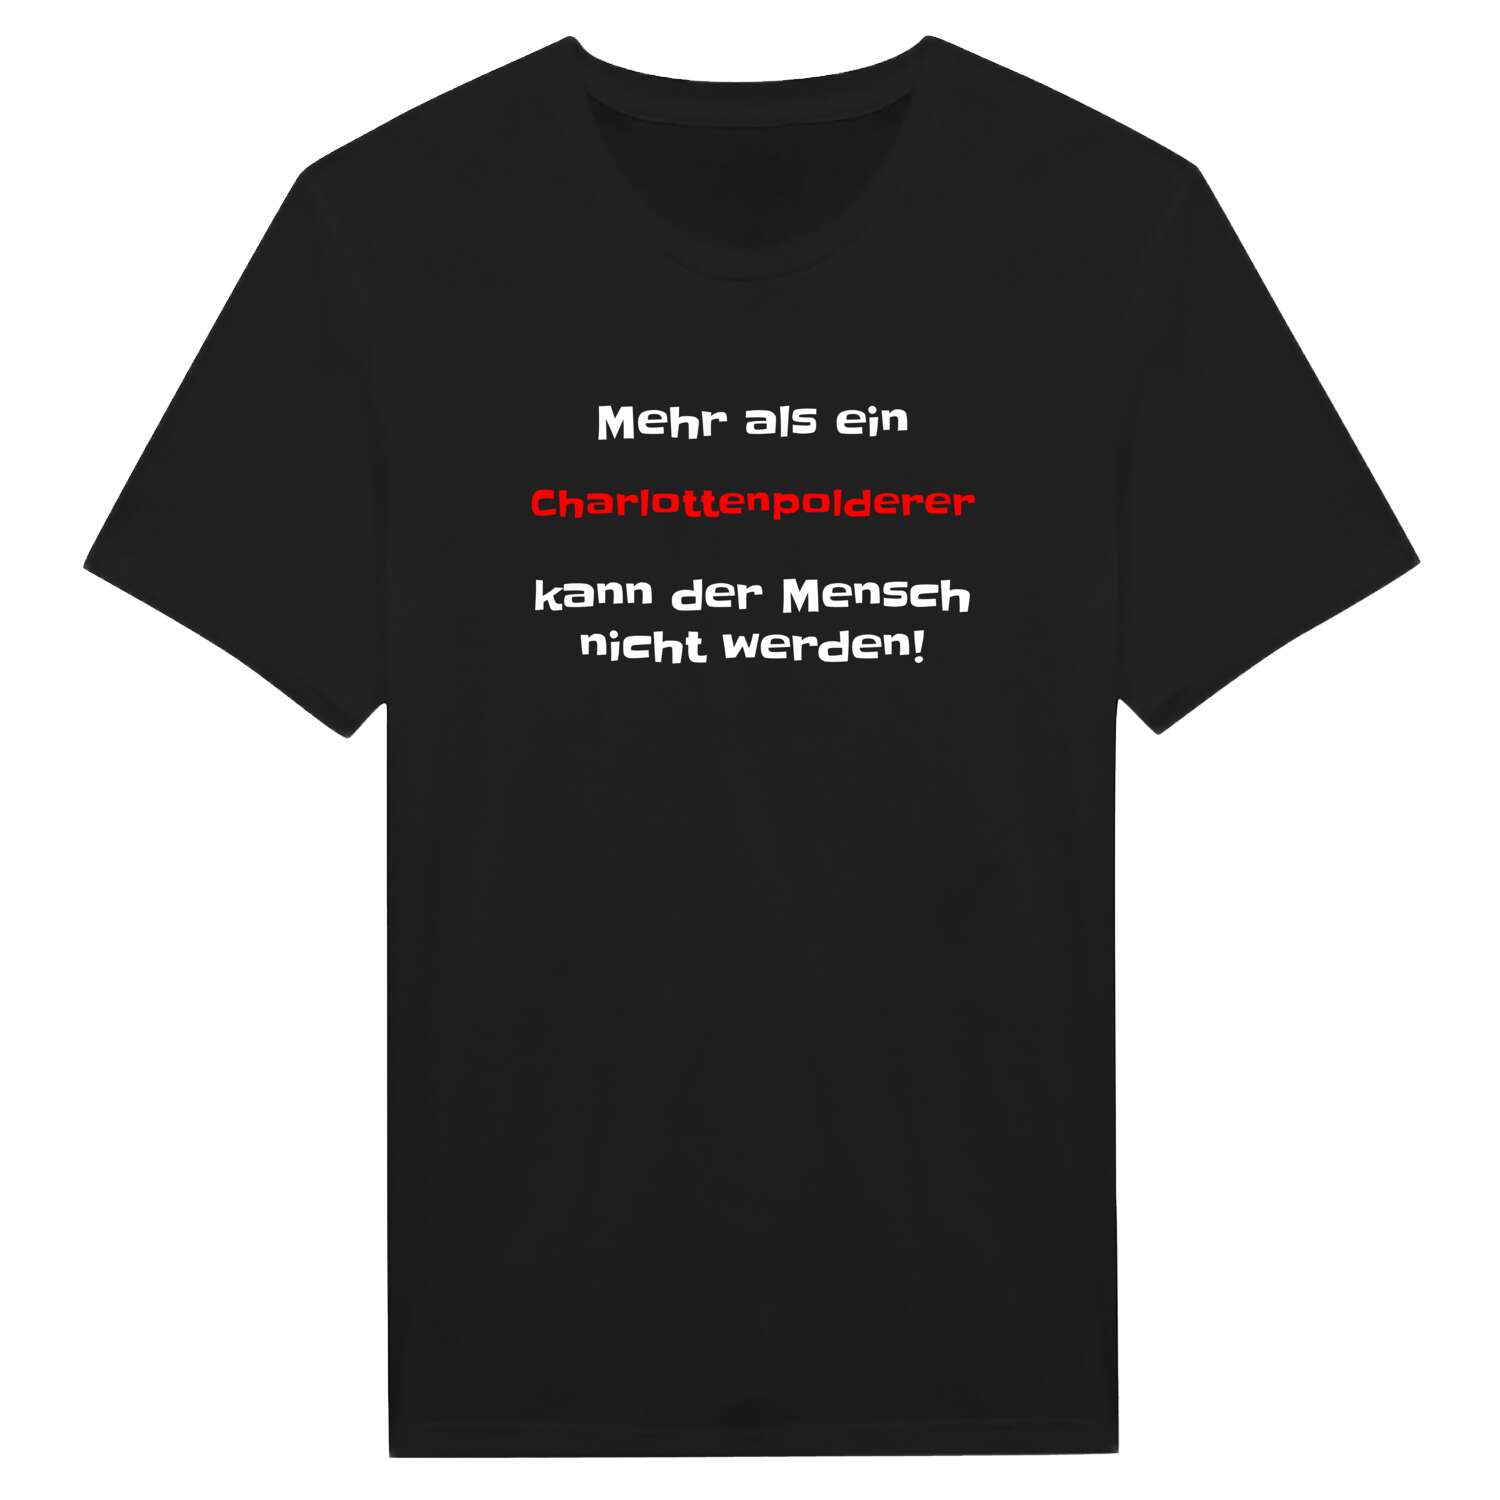 Charlottenpolder T-Shirt »Mehr als ein«